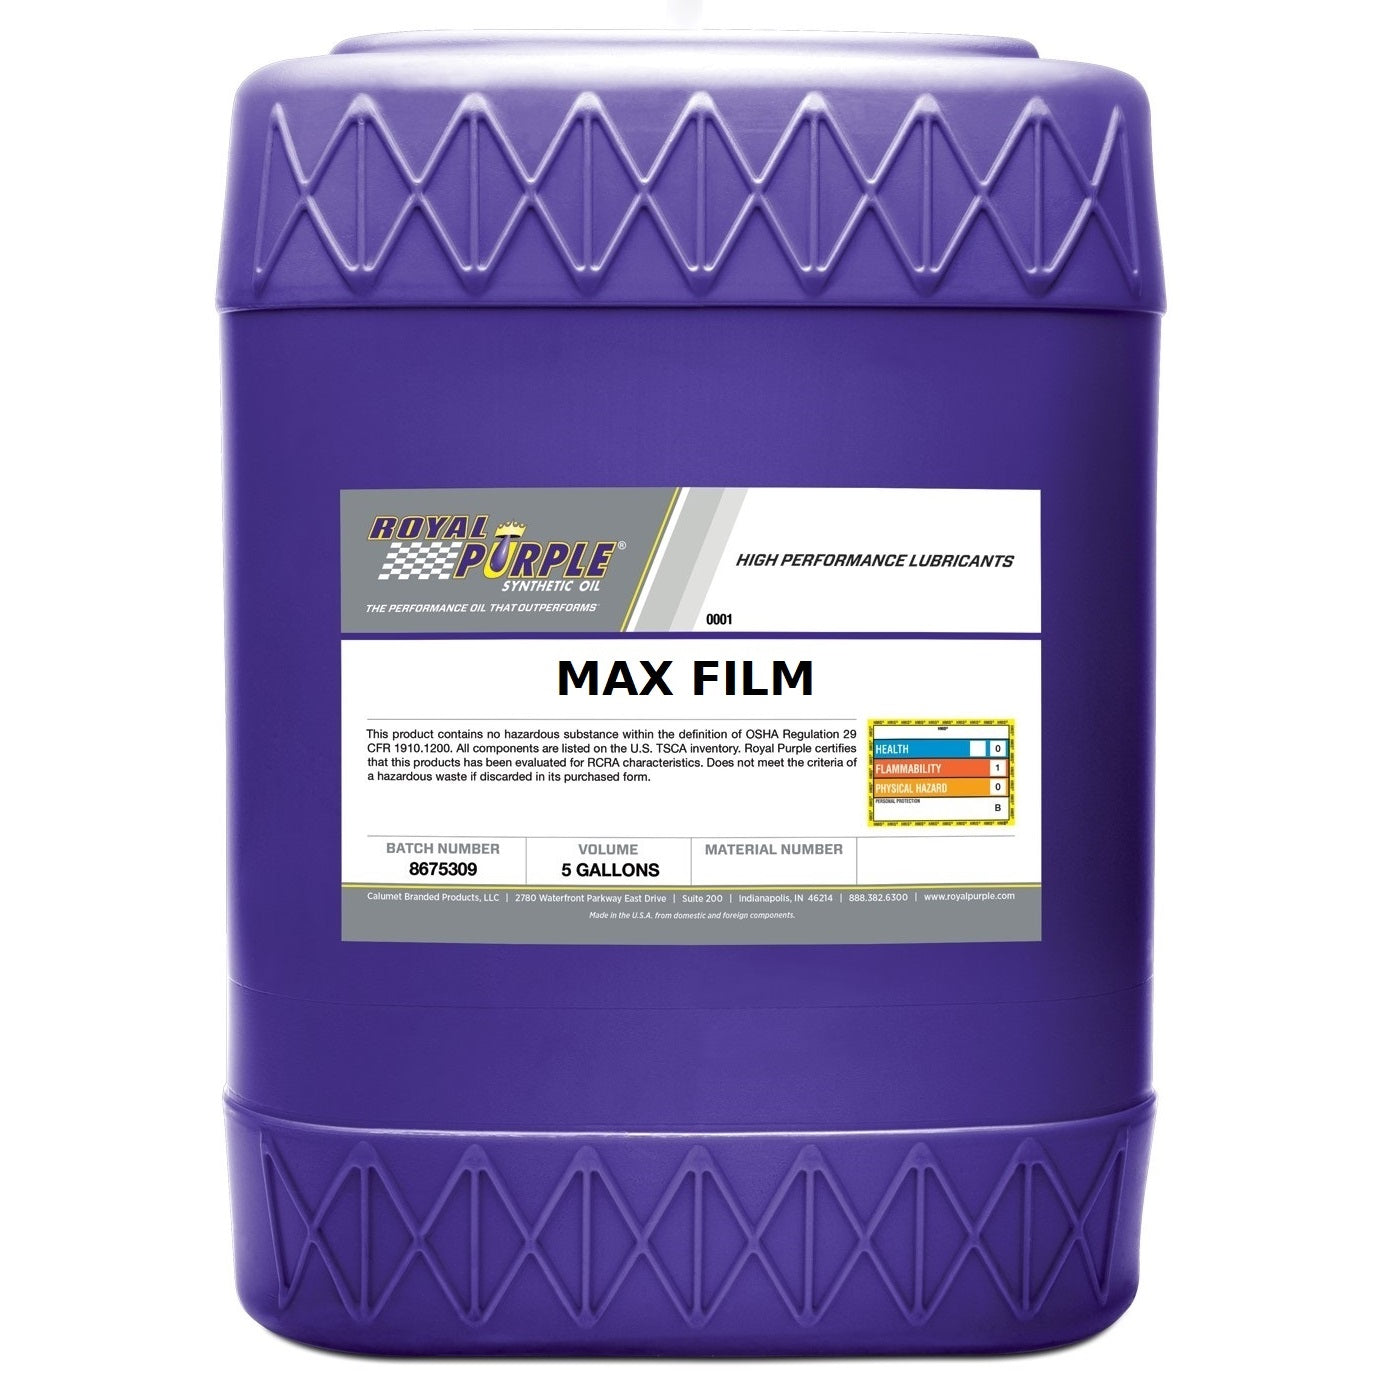 Royal Purple Max Film Lubricant